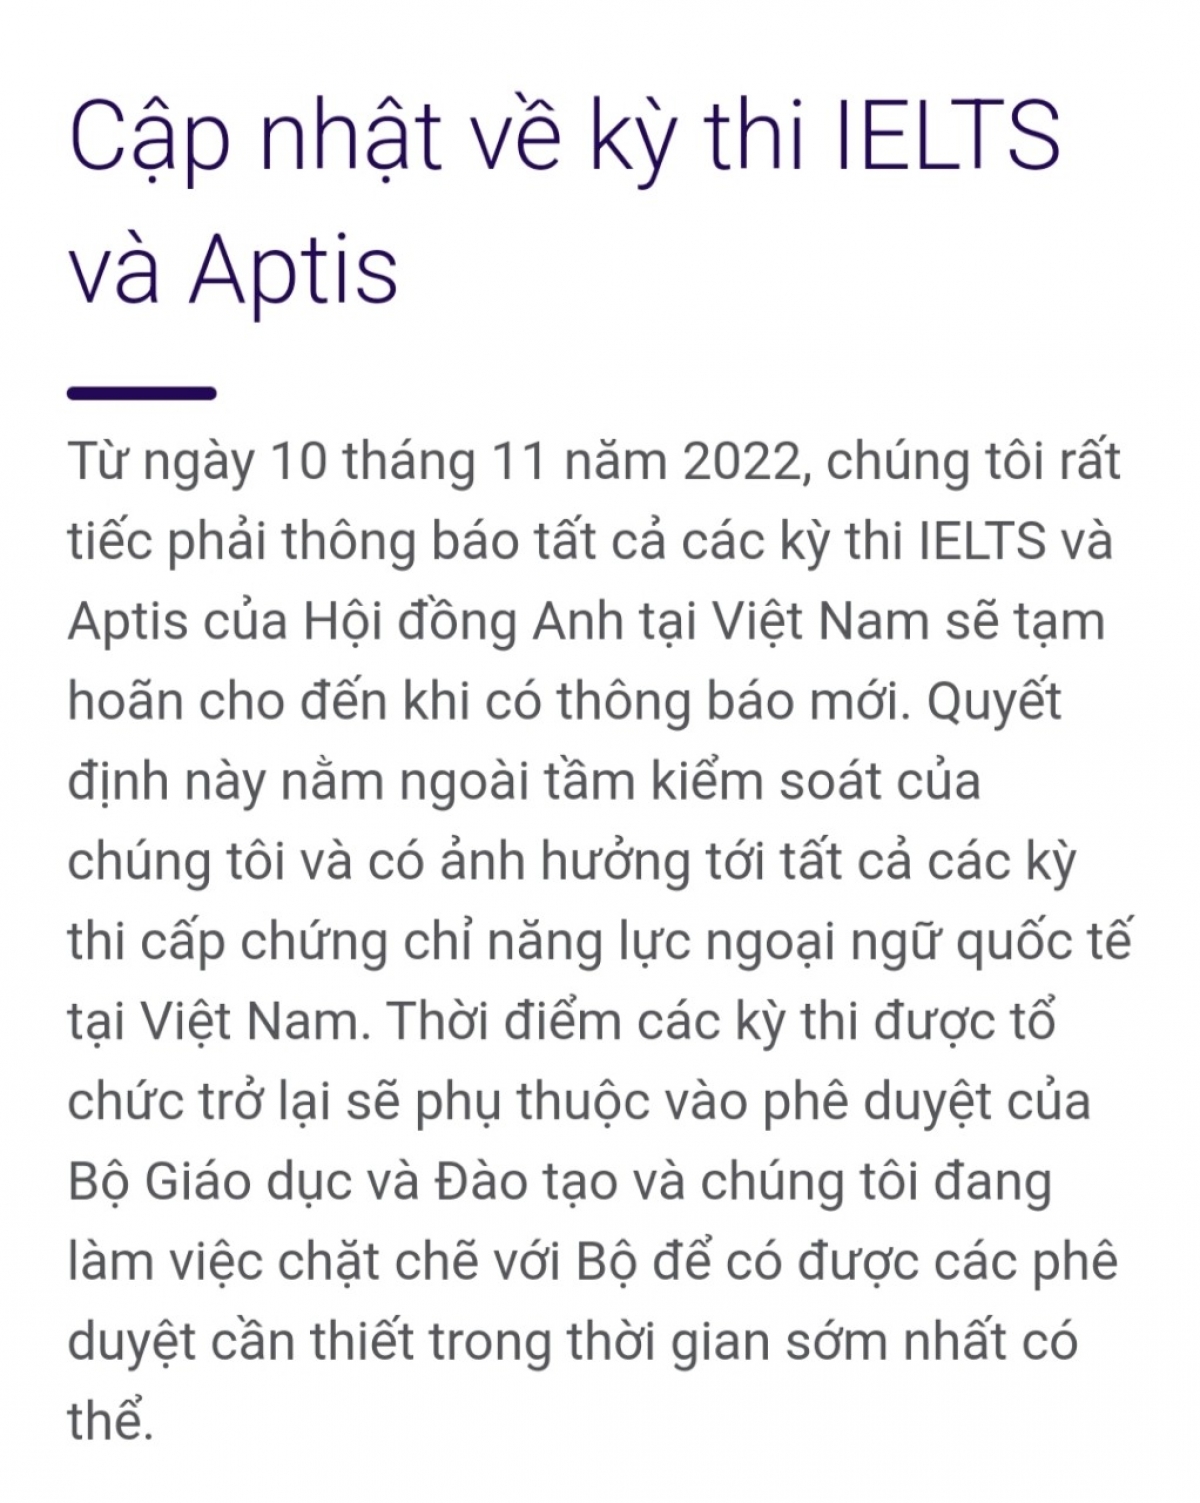 Thông báo của Hội đồng Anh về việc tạm hoãn tất cả kỳ thi IELTS và Aptis tại Việt Nam từ 10/11